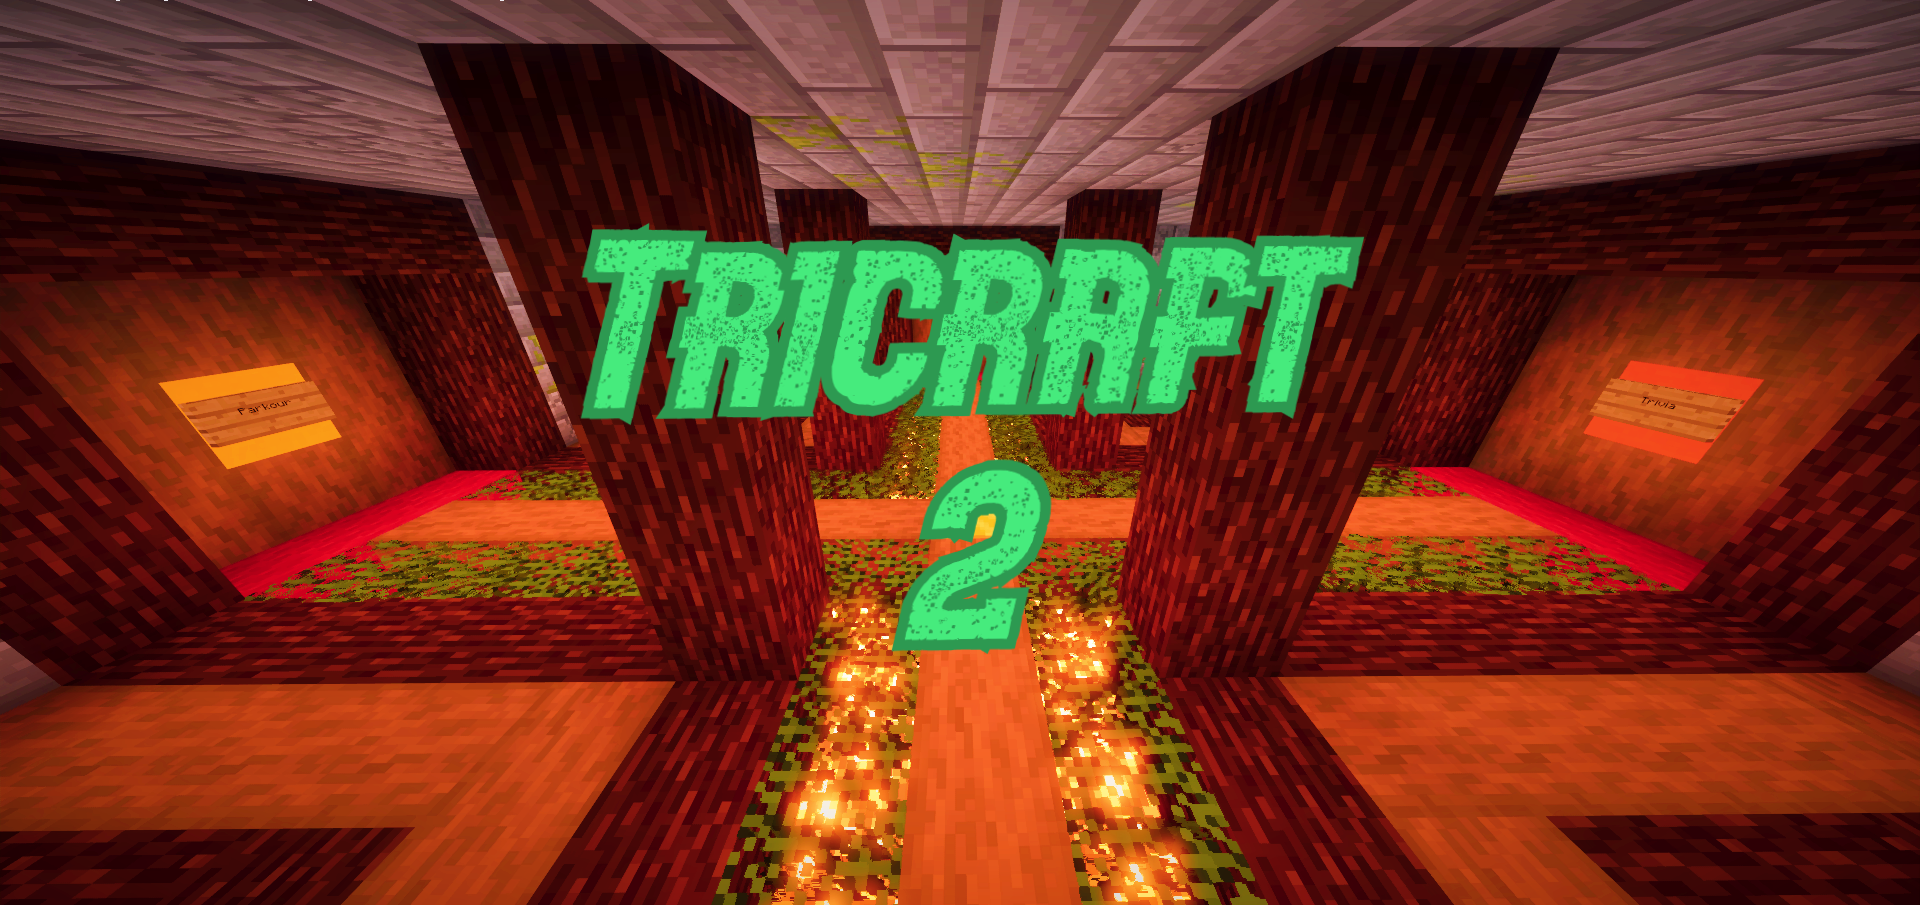 Скачать Tricraft 2 для Minecraft 1.15.2